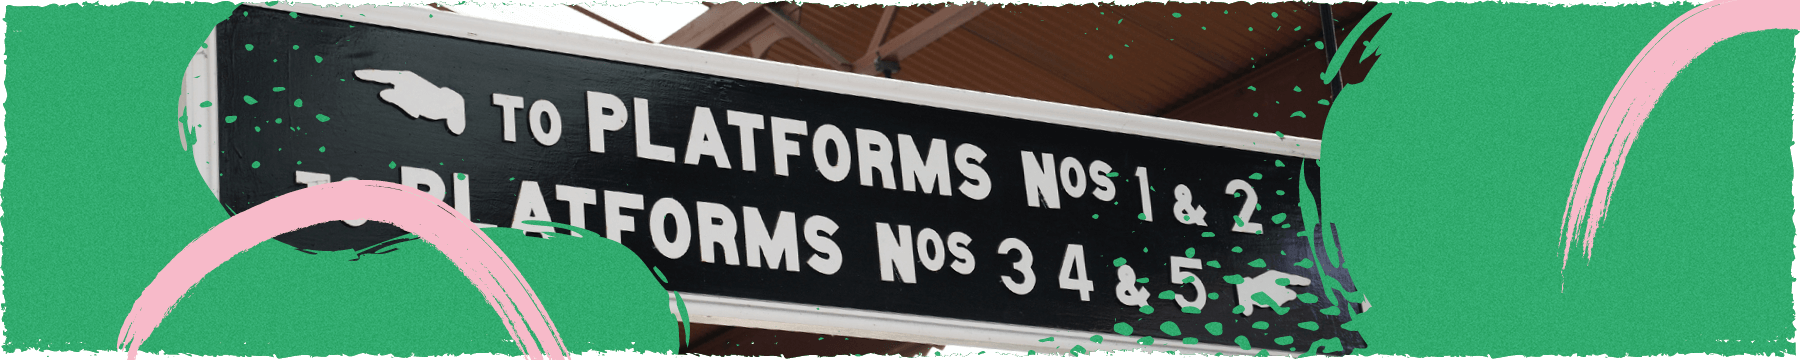 Platform signage